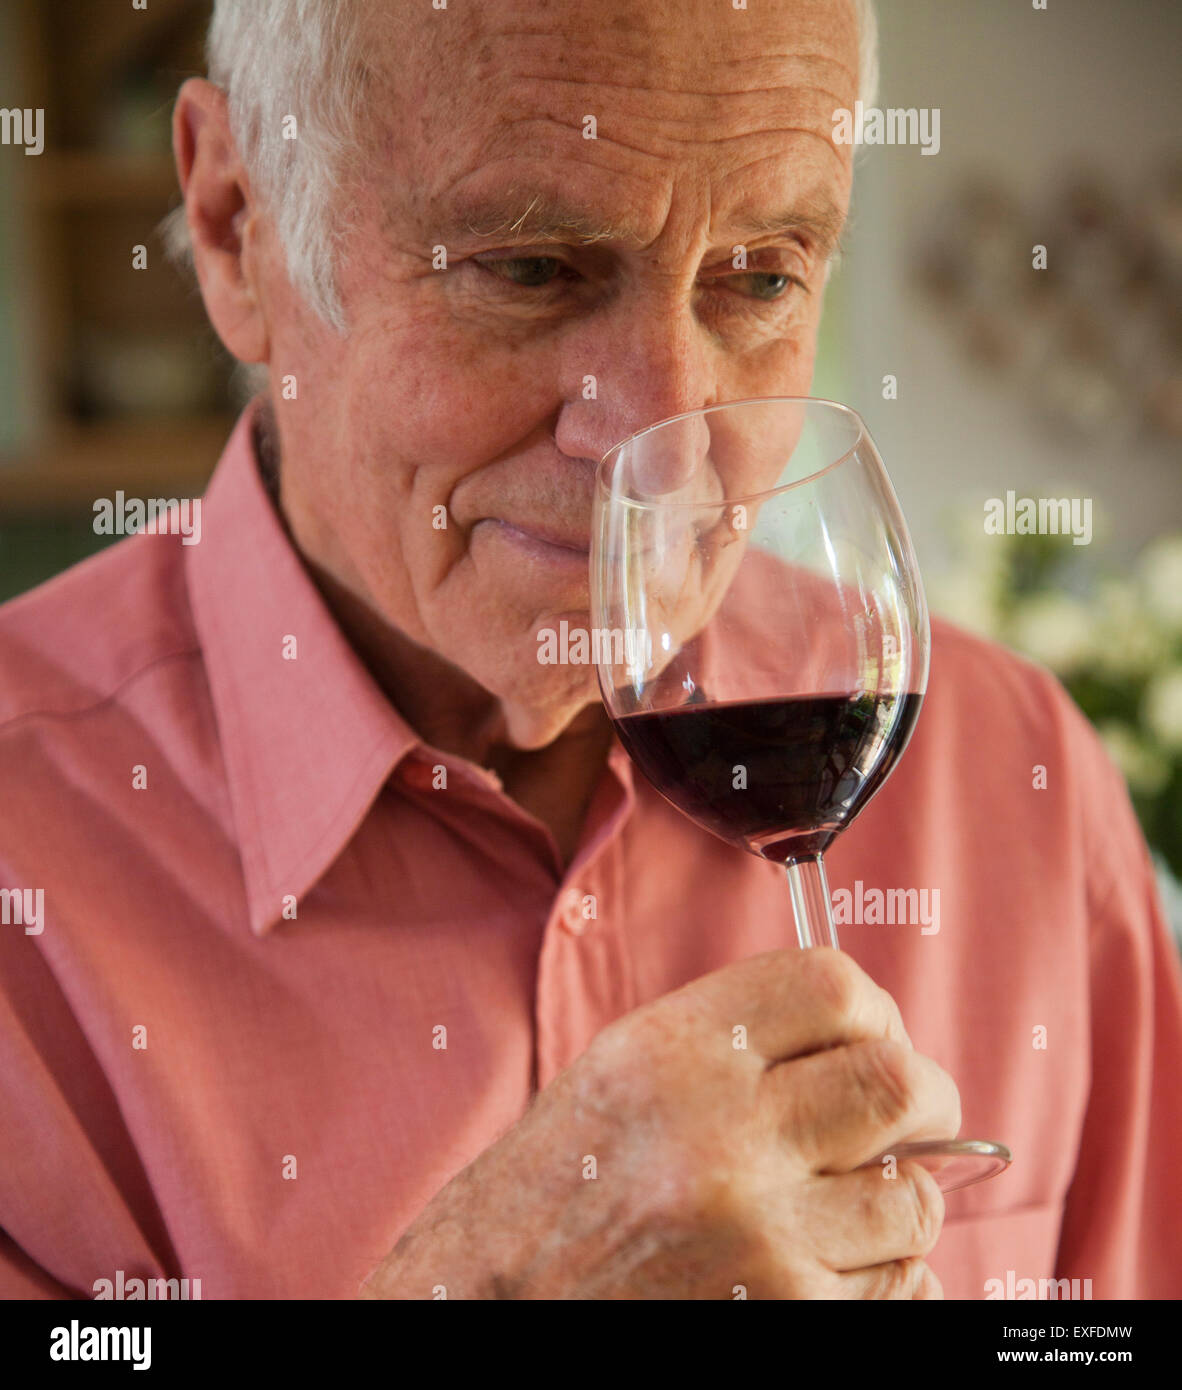 Man smelling arôme de verre de vin rouge Banque D'Images